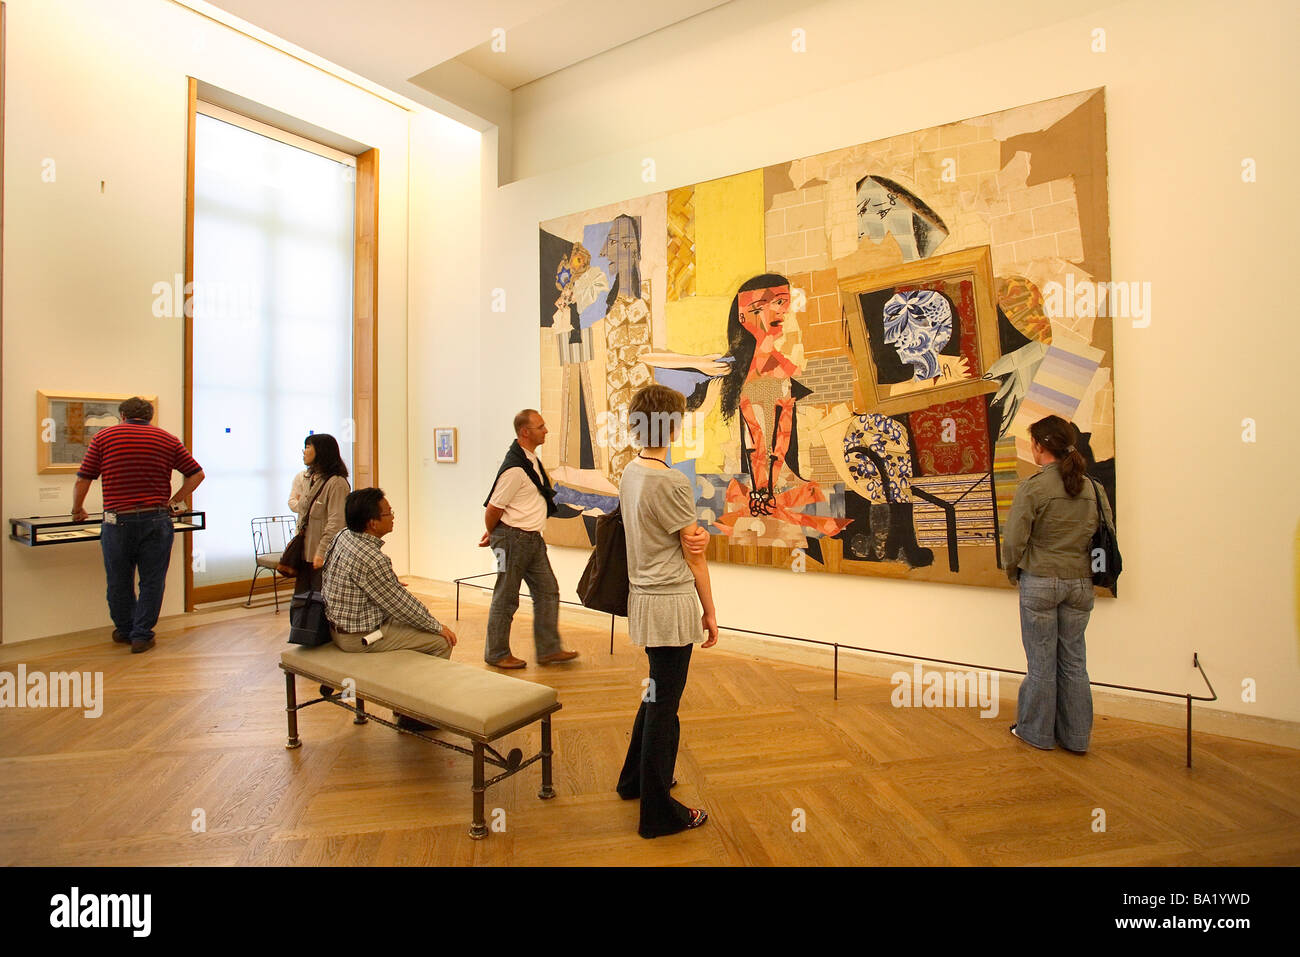 Musée Picasso PARIS PERSONNES AVANT DE LA PEINTURE FEMMES UN LEUR TOILETTE Banque D'Images